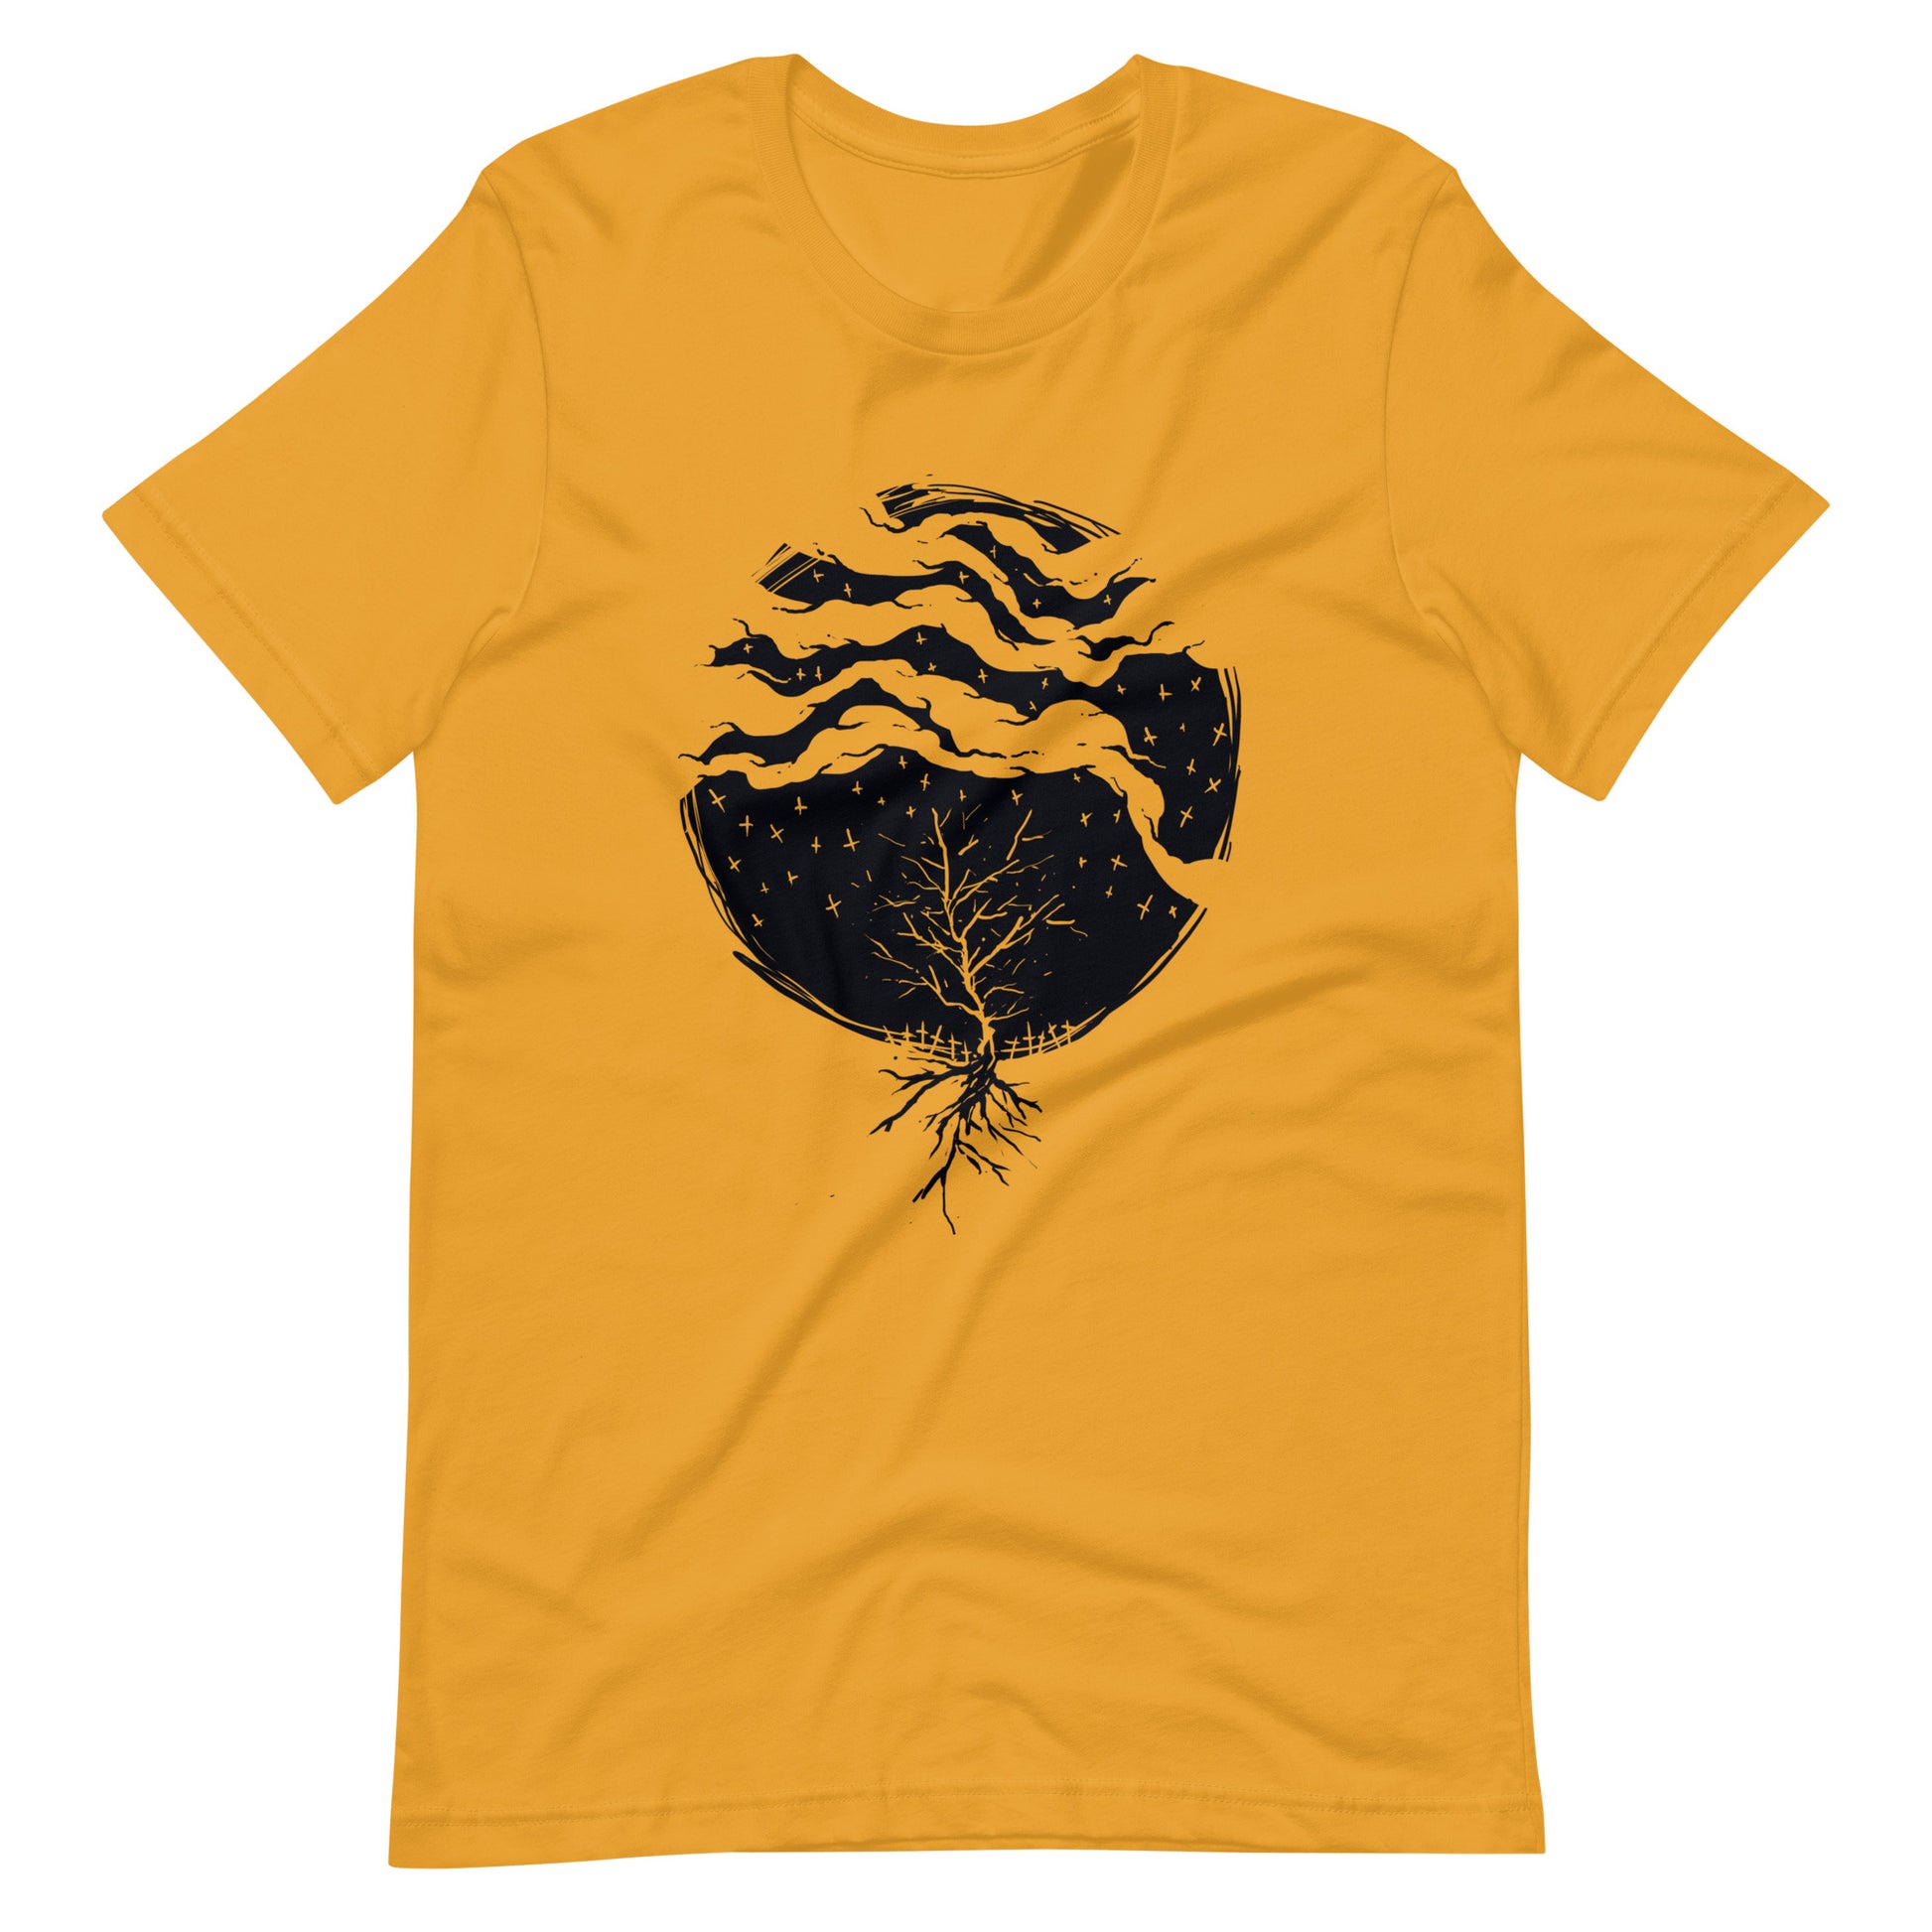 Dead Rain Black - Men's t-shirt - Mustard Front